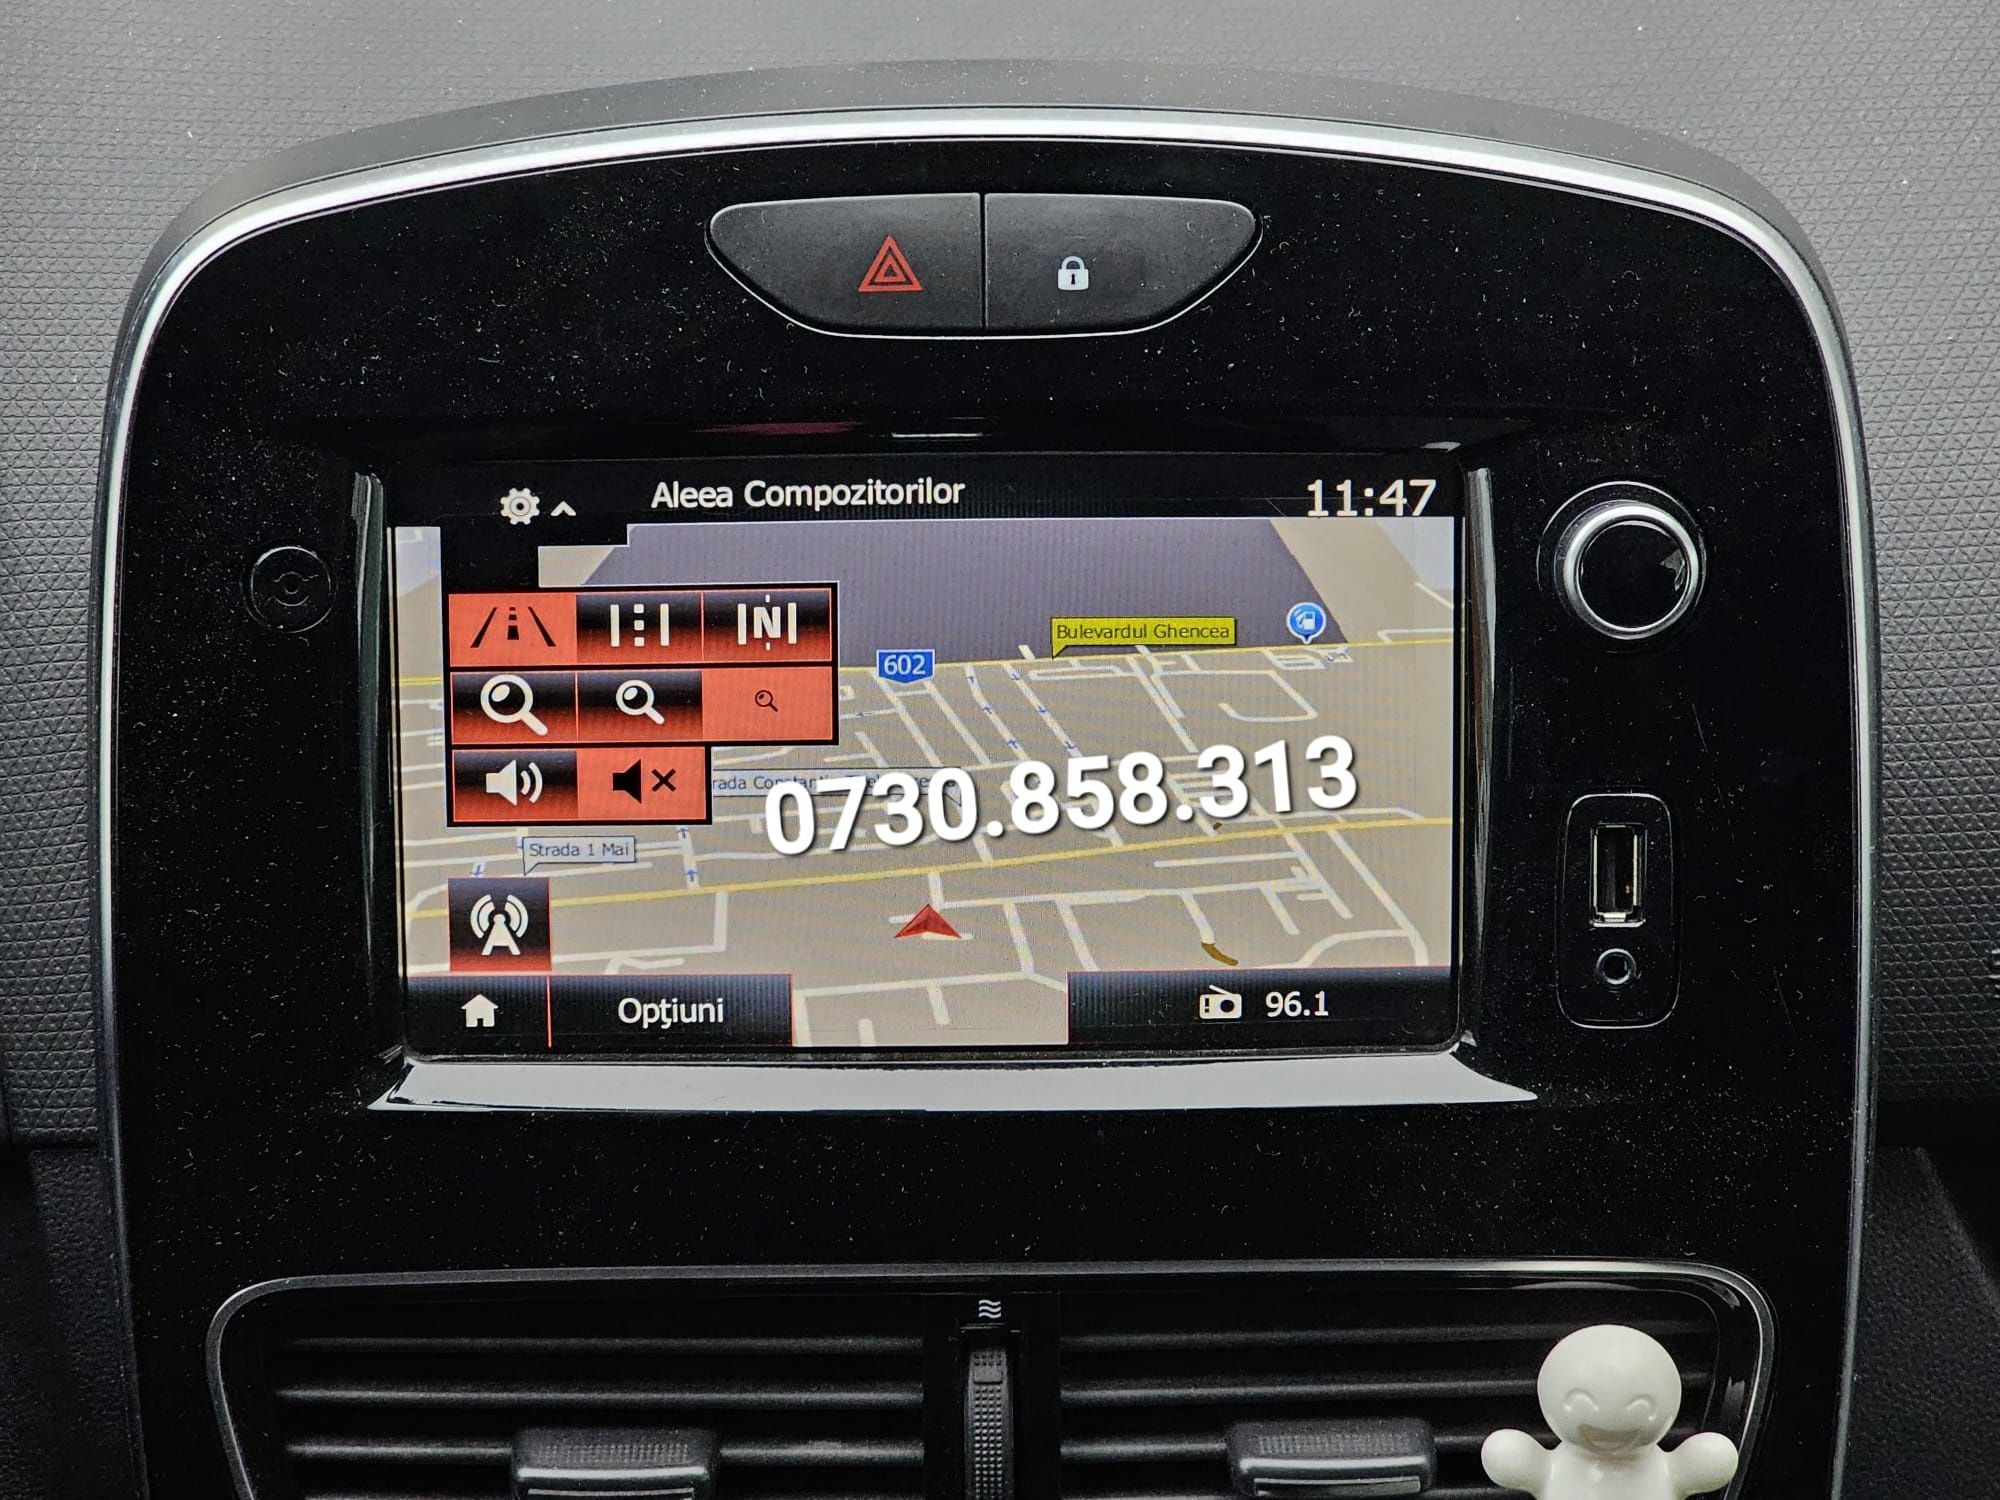 Harta Clio 4 Renault MediaNav hărți Europa Full GPS navigație